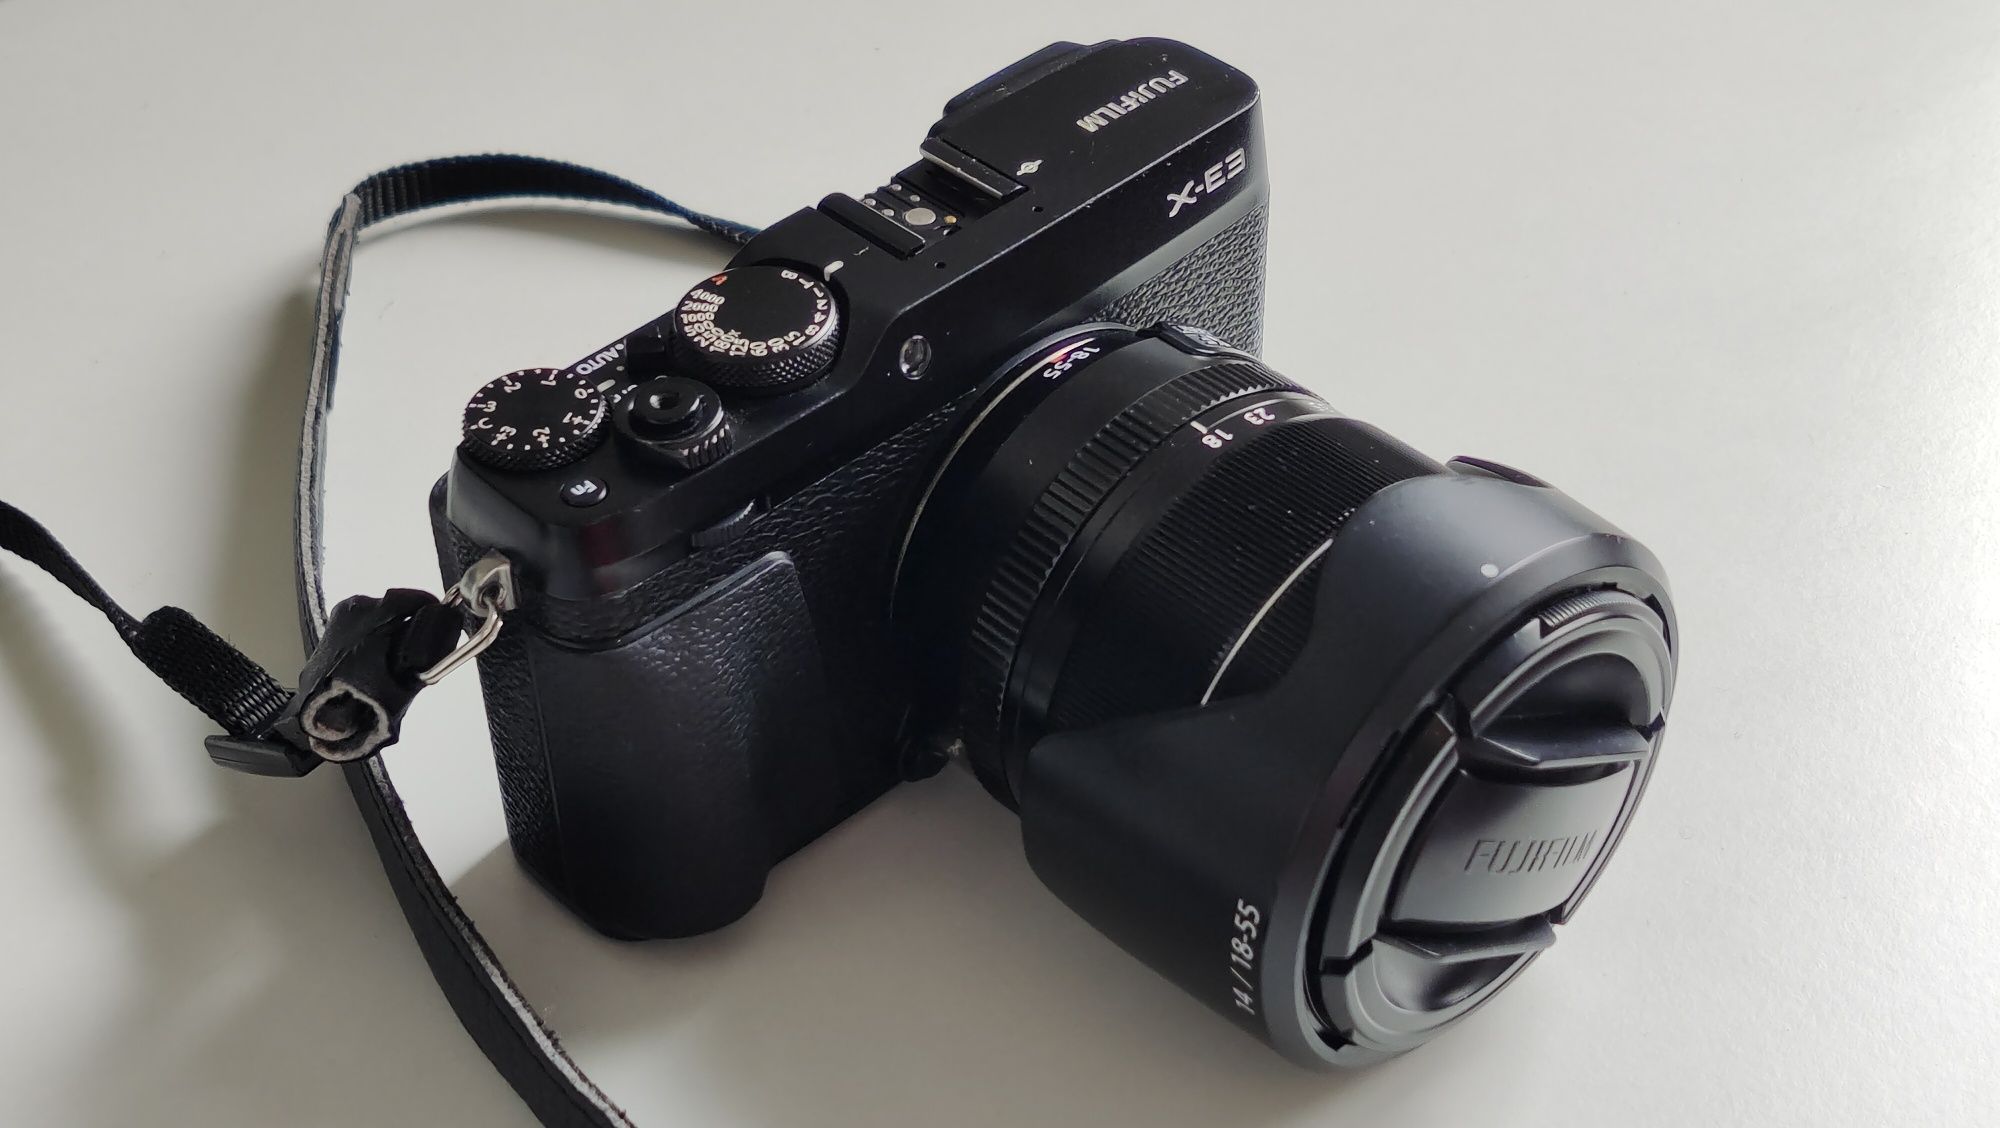 X-E3 XF18-55mm F2.8-4 R LM OIS aparat Fujifilm z obiektywem